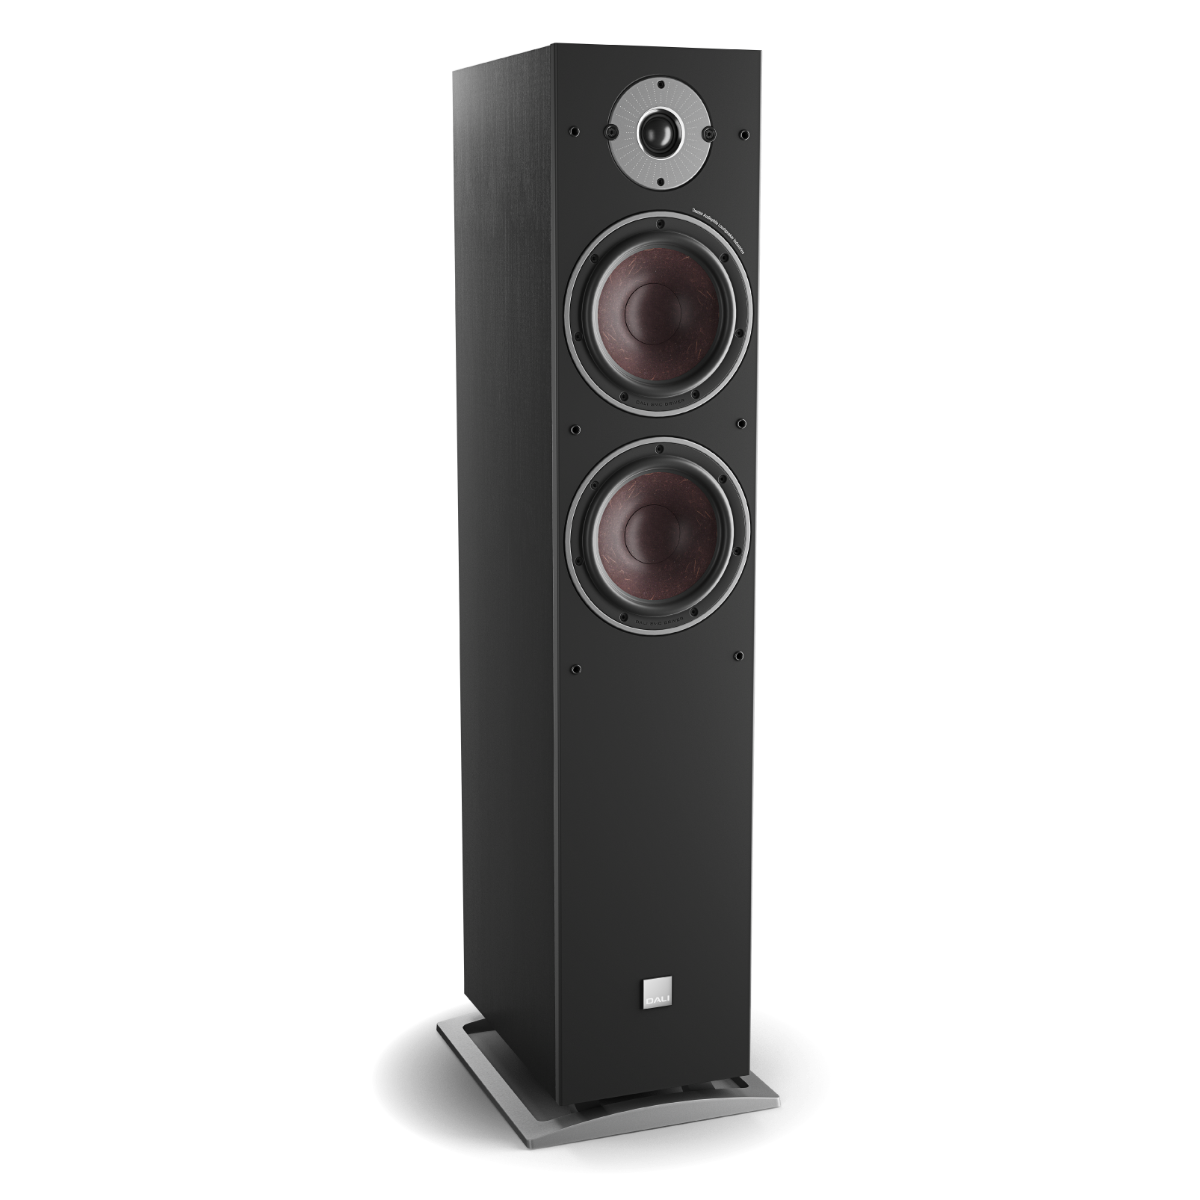 Kenia Ga door seinpaal DALI Oberon 7 C Vloerstaande Speaker Zwart hifi-speaker kopen? |  Kieskeurig.nl | helpt je kiezen